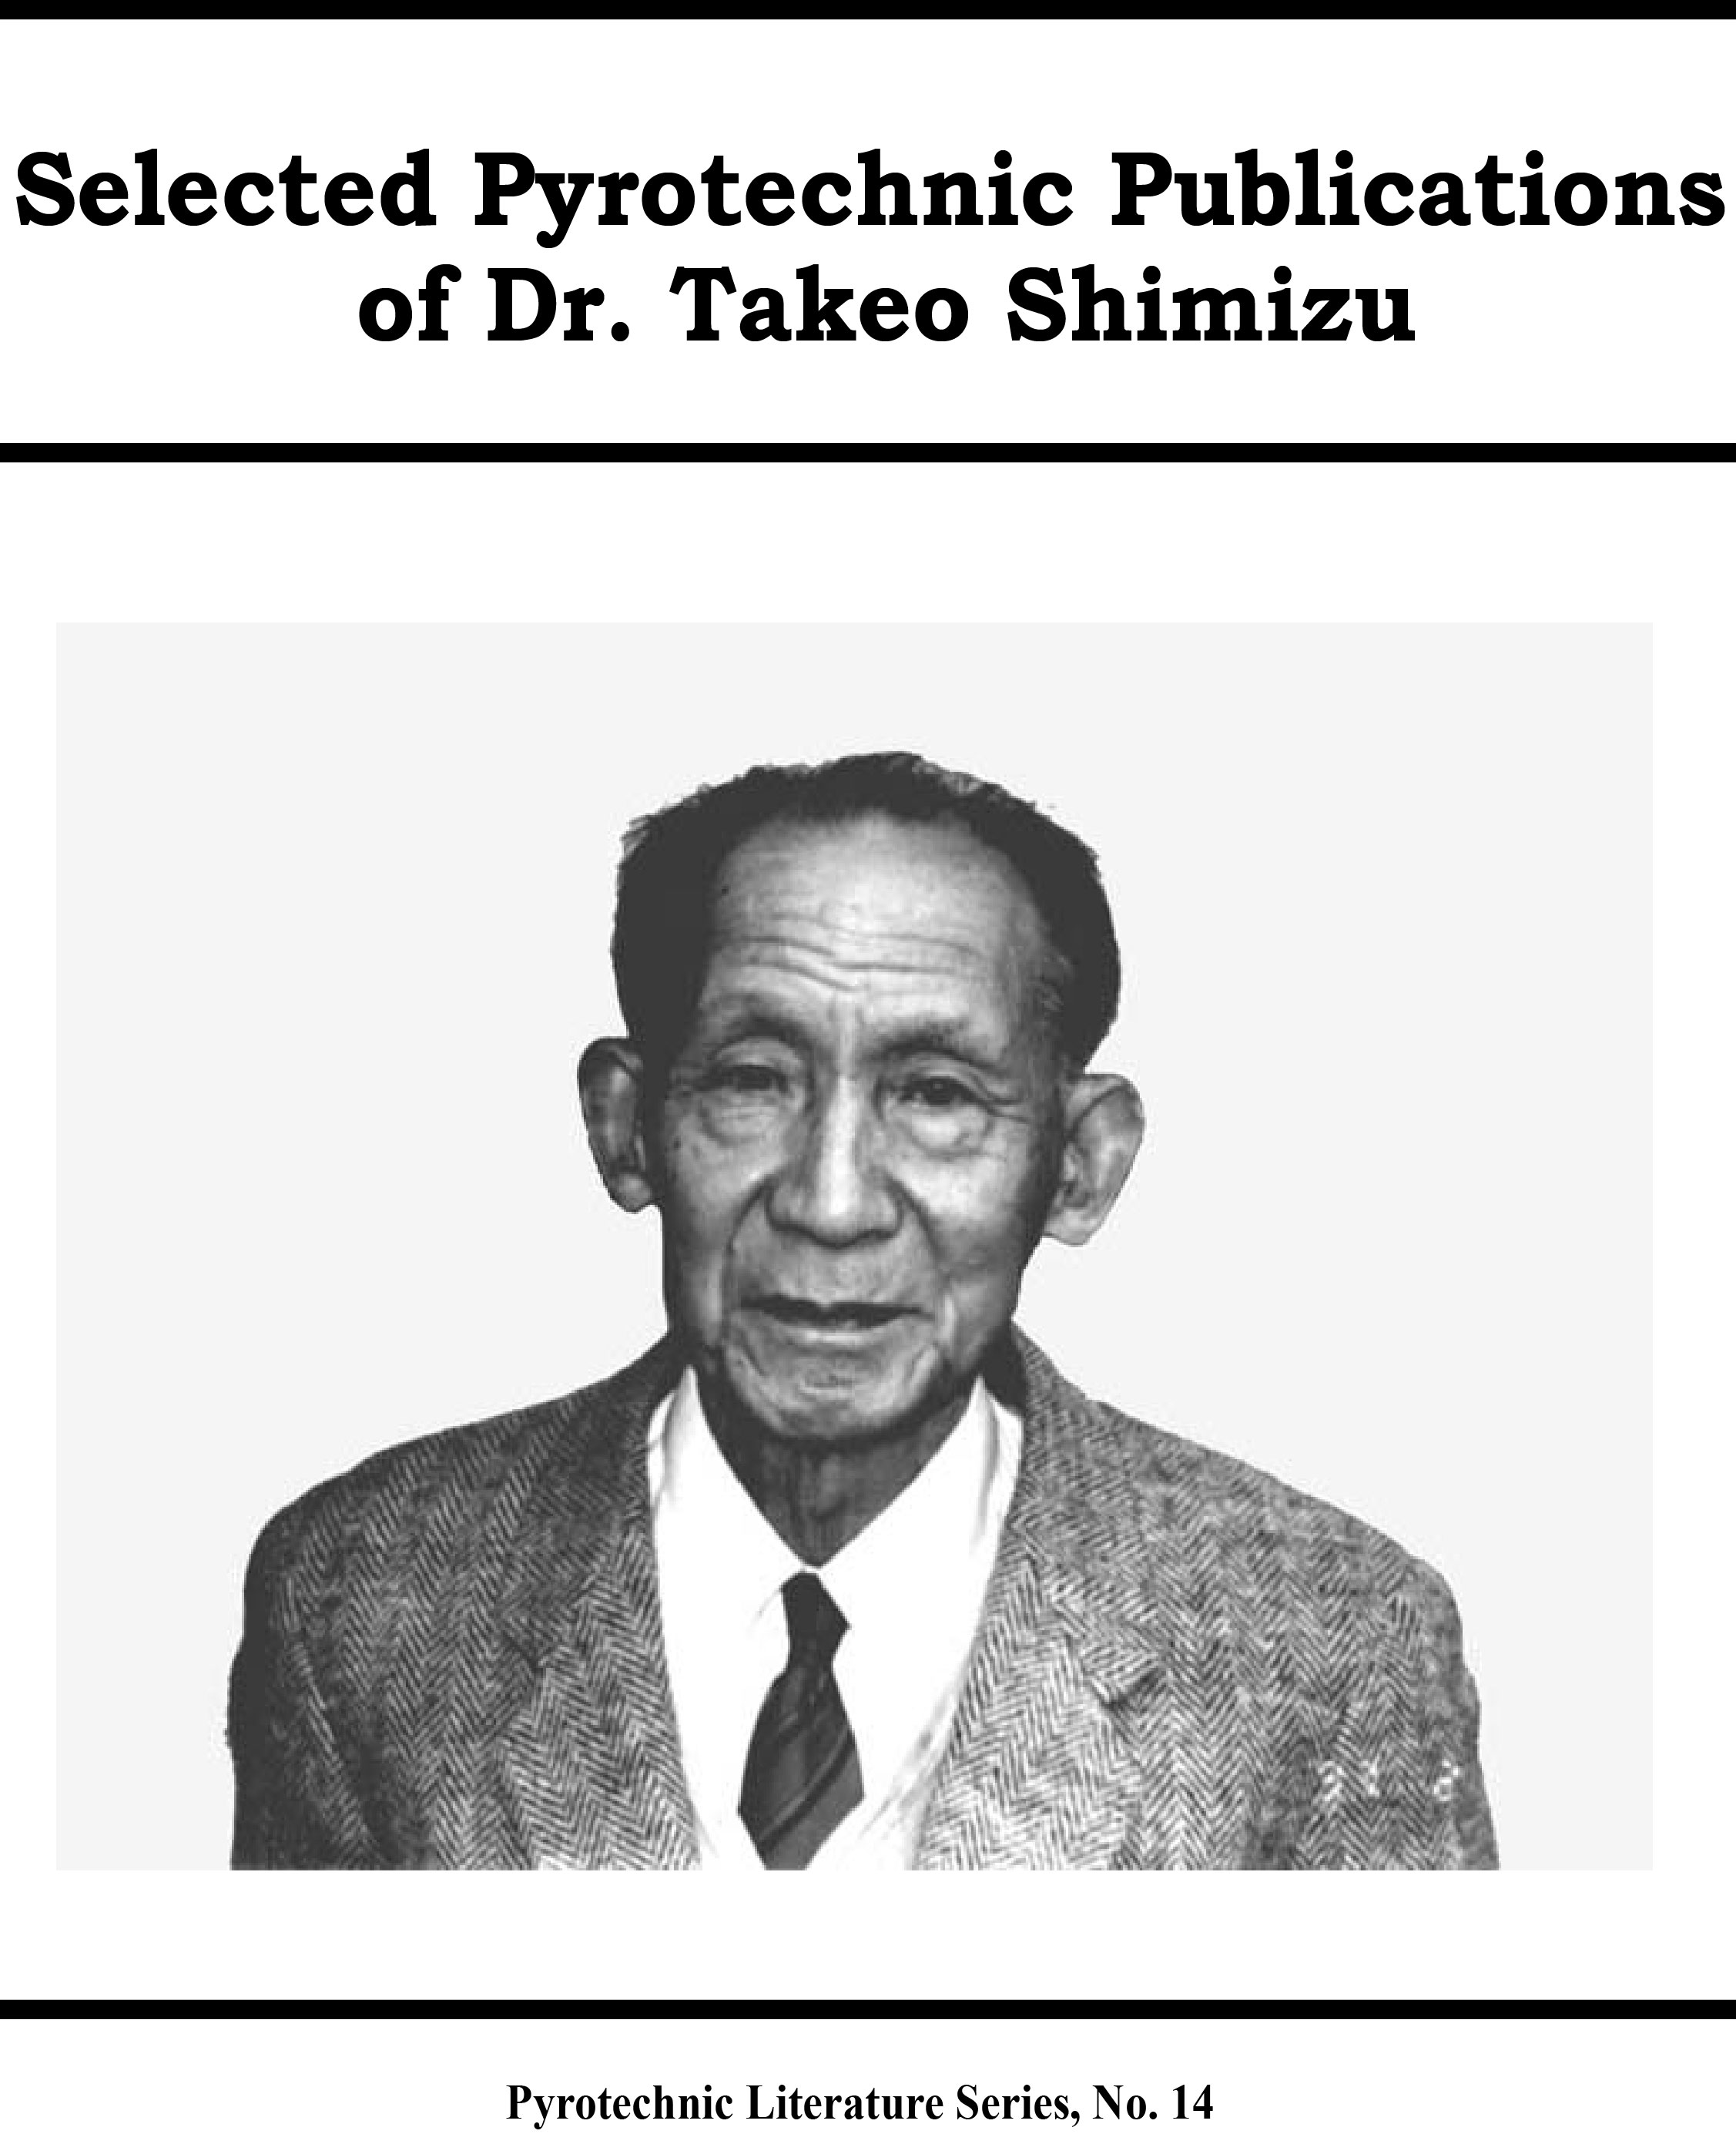 SHIM1-4 - Selected Pyro Publications of Dr. Shimizu Parts 1-4